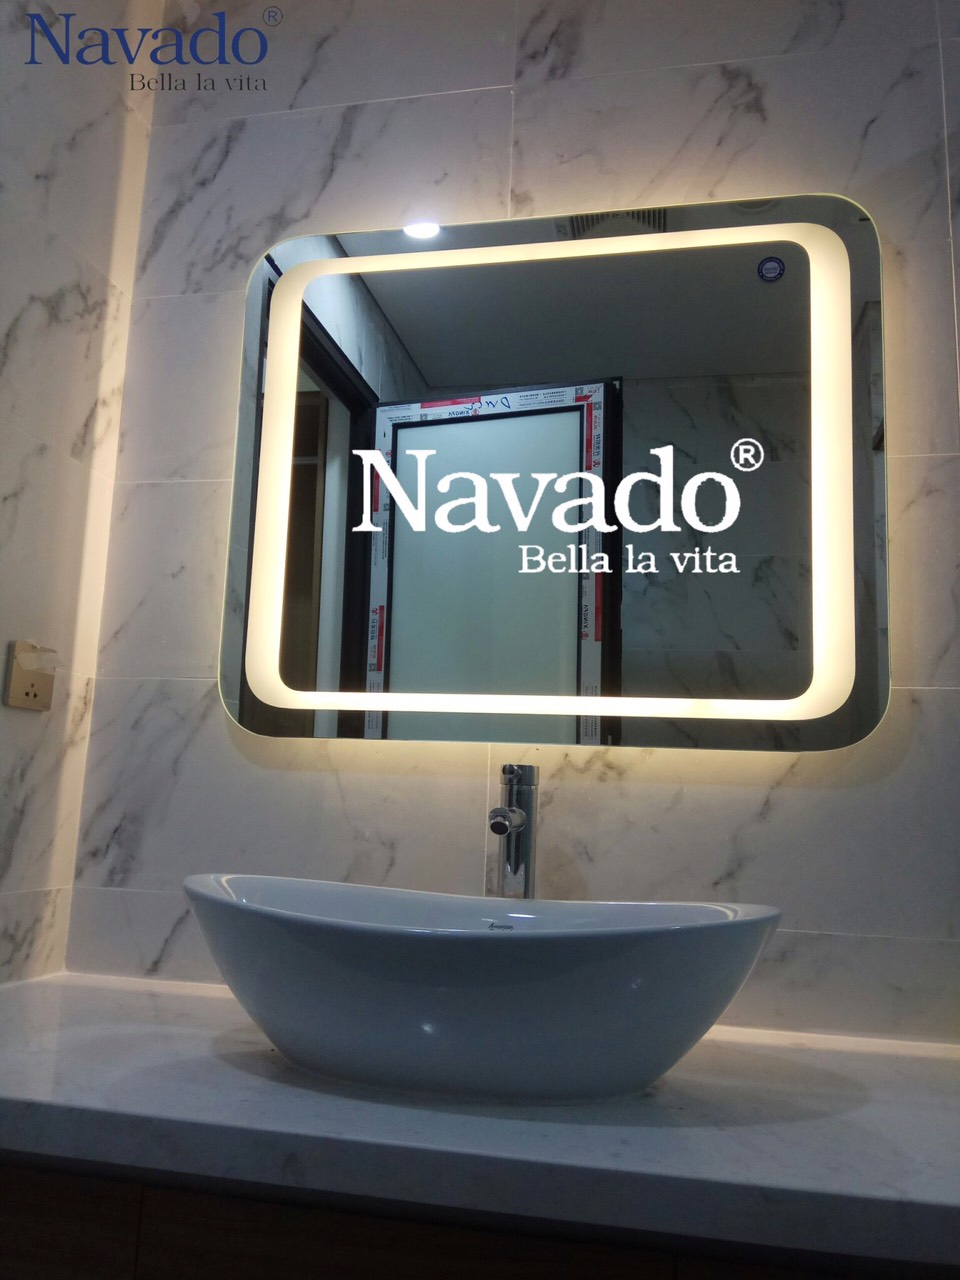 Gương phòng tắm LED hình chữ nhật với đèn LED công nghệ cao là lựa chọn hoàn hảo cho chiếc gương tuyệt vời trong căn phòng của bạn. Với các tính năng tùy chỉnh ánh sáng linh hoạt, gương LED hình chữ nhật sẽ giúp bạn tạo ra không gian phòng tắm sáng tạo và hiện đại mỗi ngày.